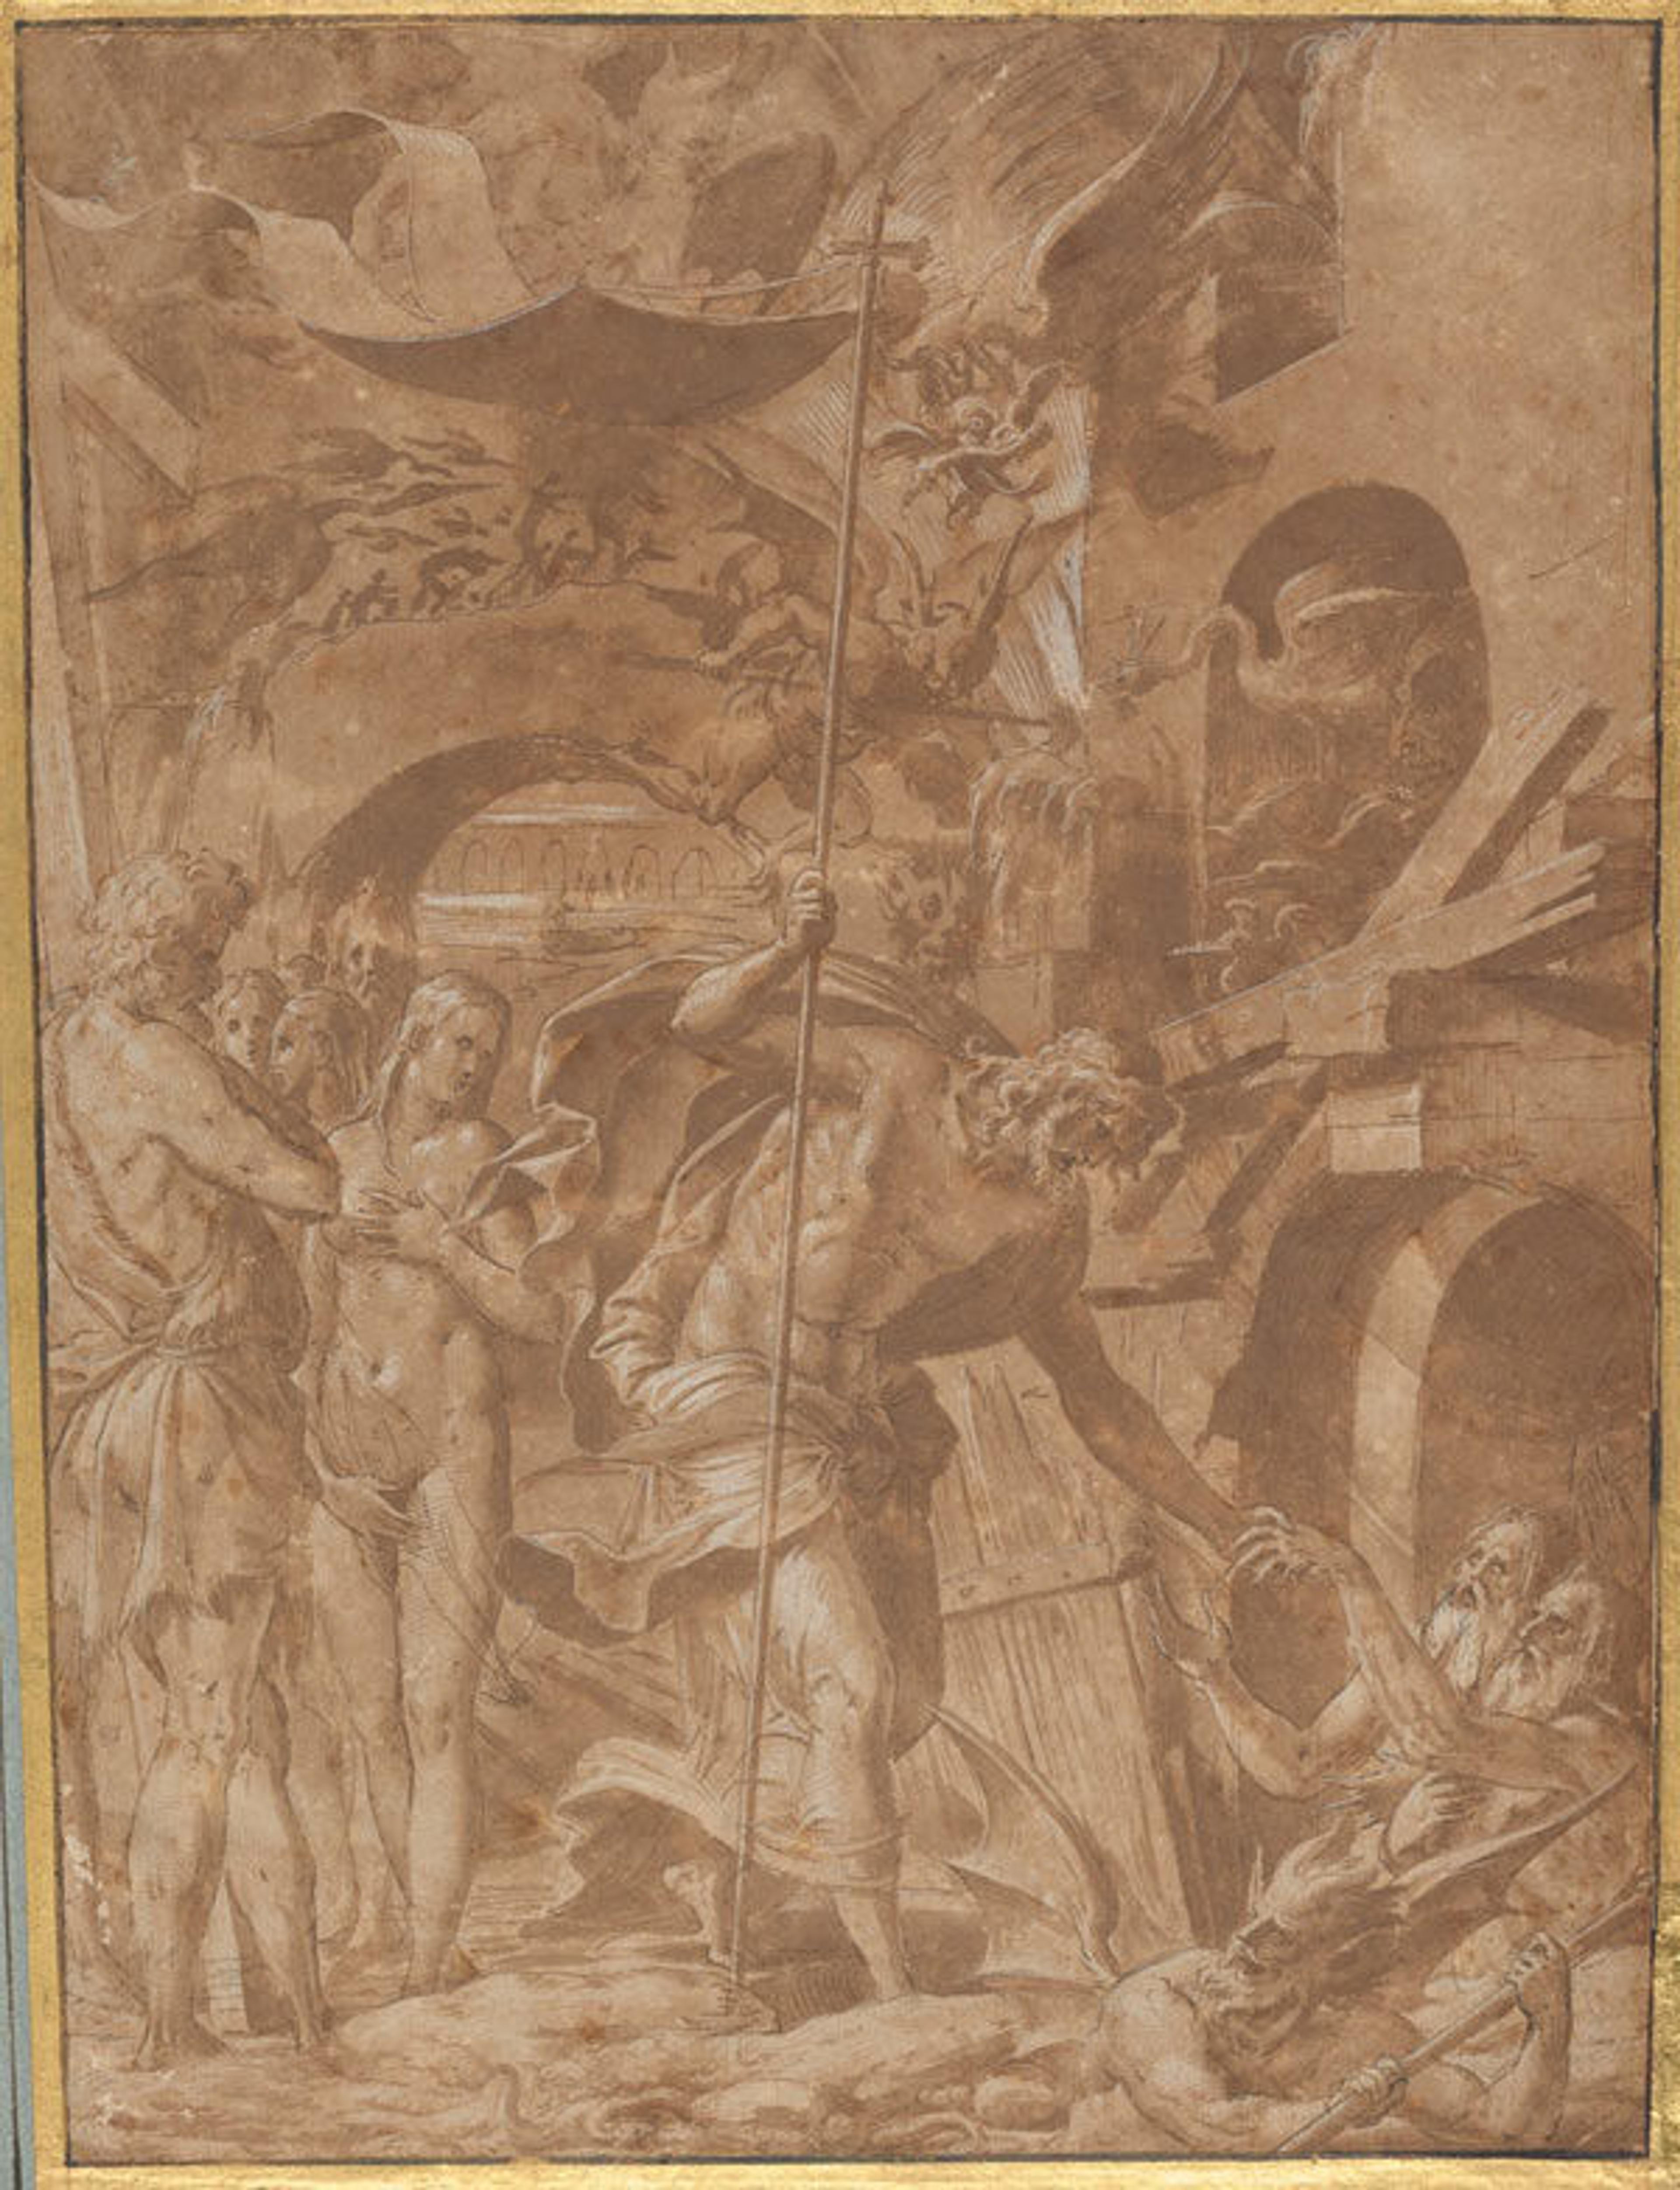 Luca Penni (Italian, 1500/1504-1557), Christ in Limbo